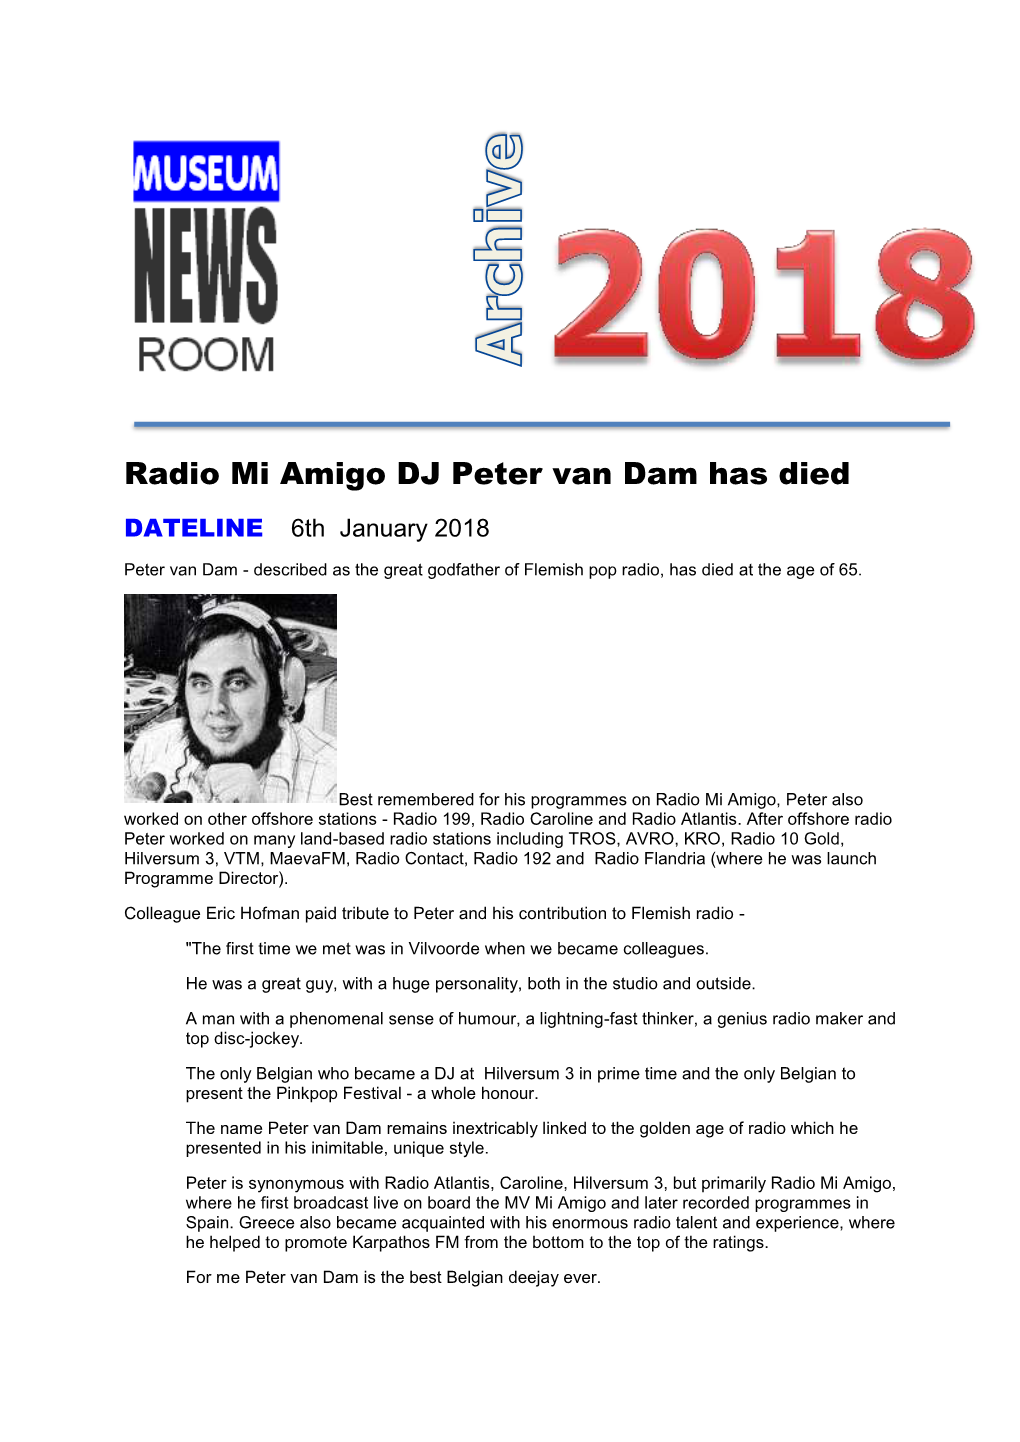 Radio Mi Amigo DJ Peter Van Dam Has Died